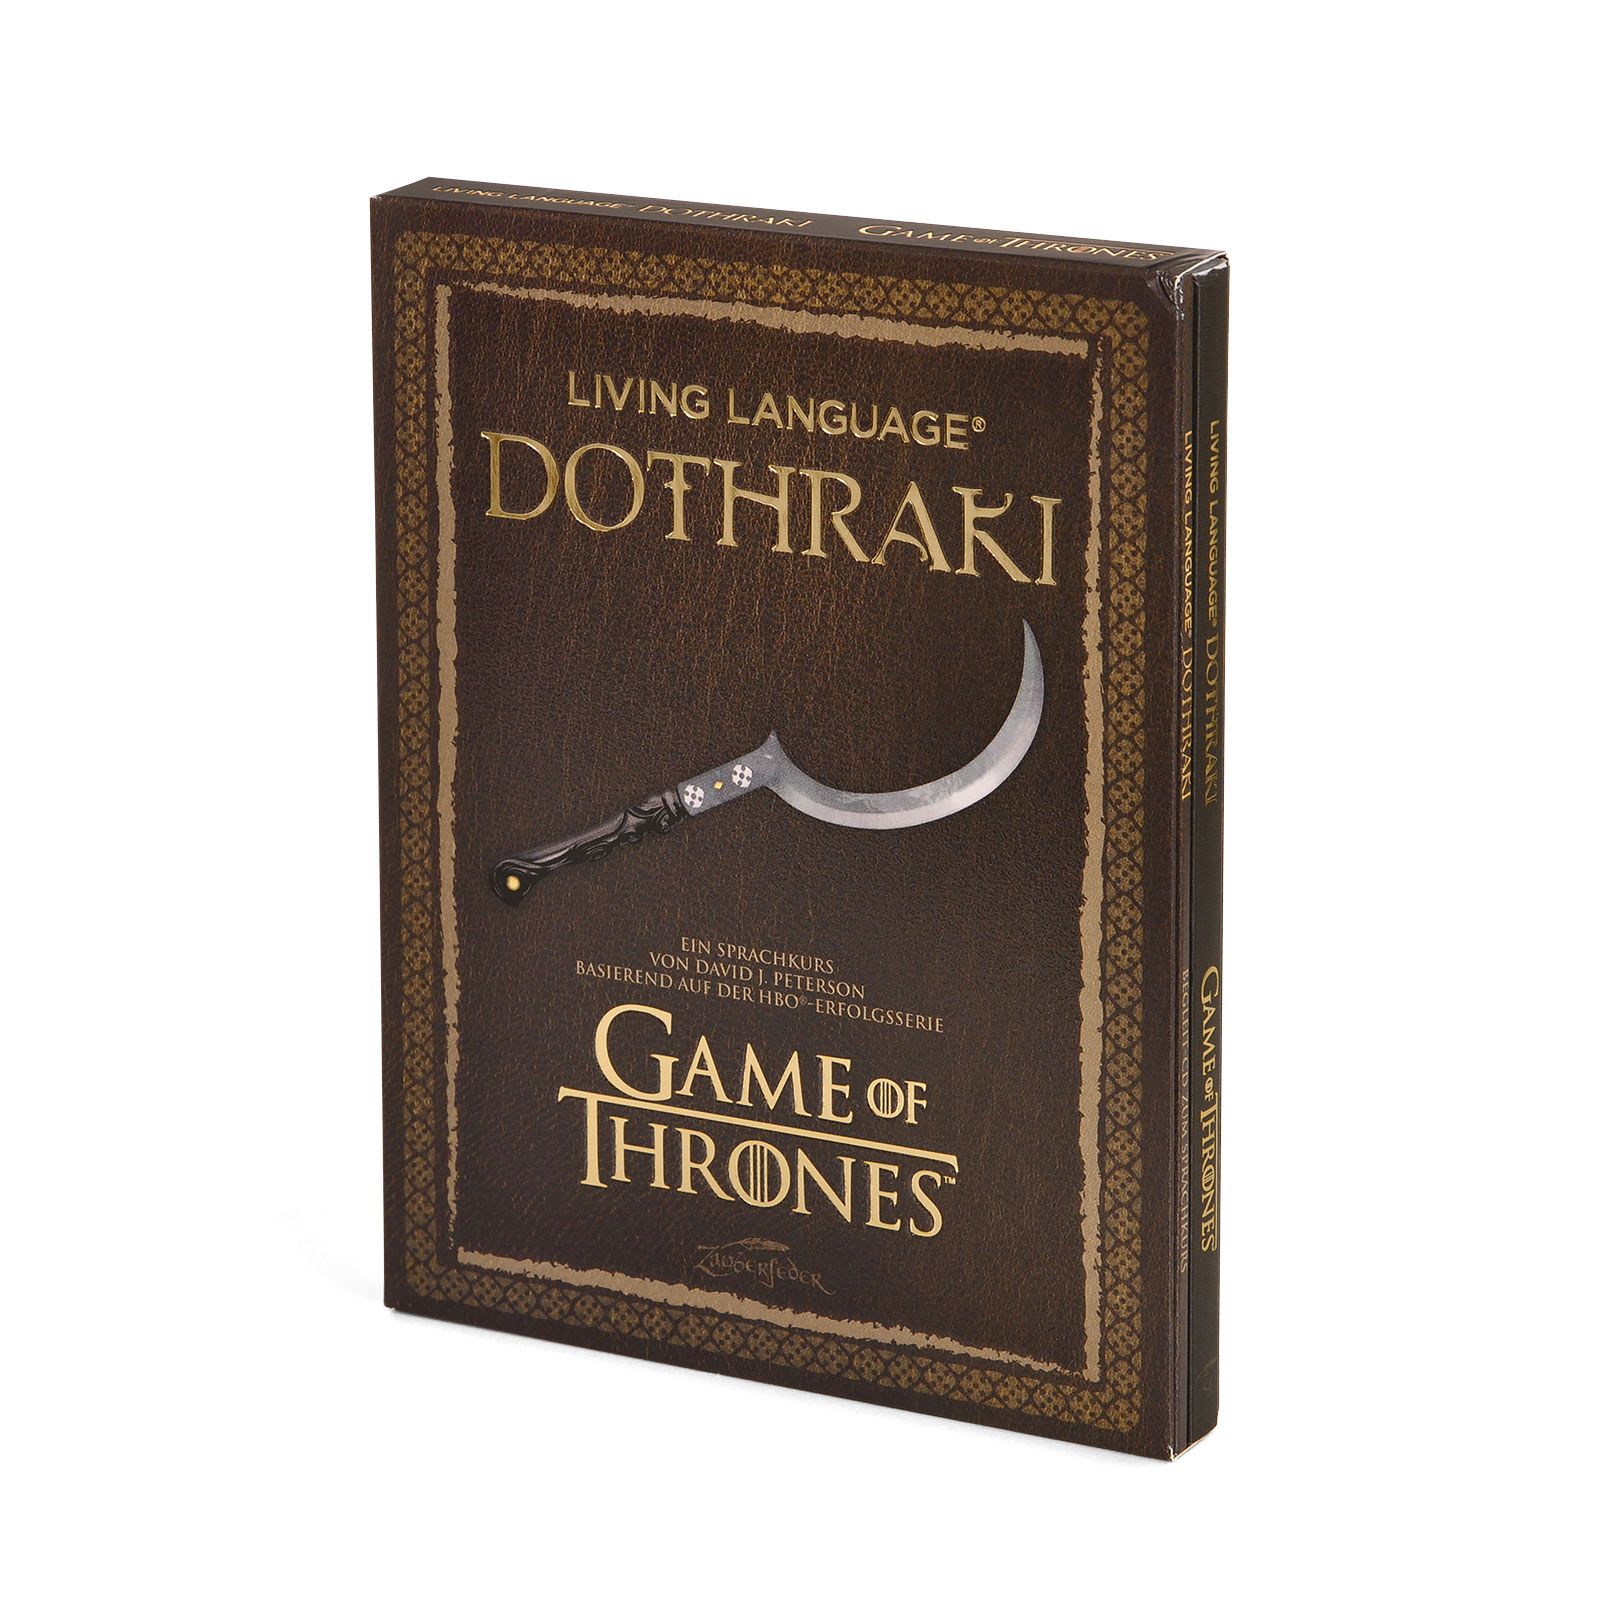 Game of Thrones - Dothraki - Ein Sprachkurs